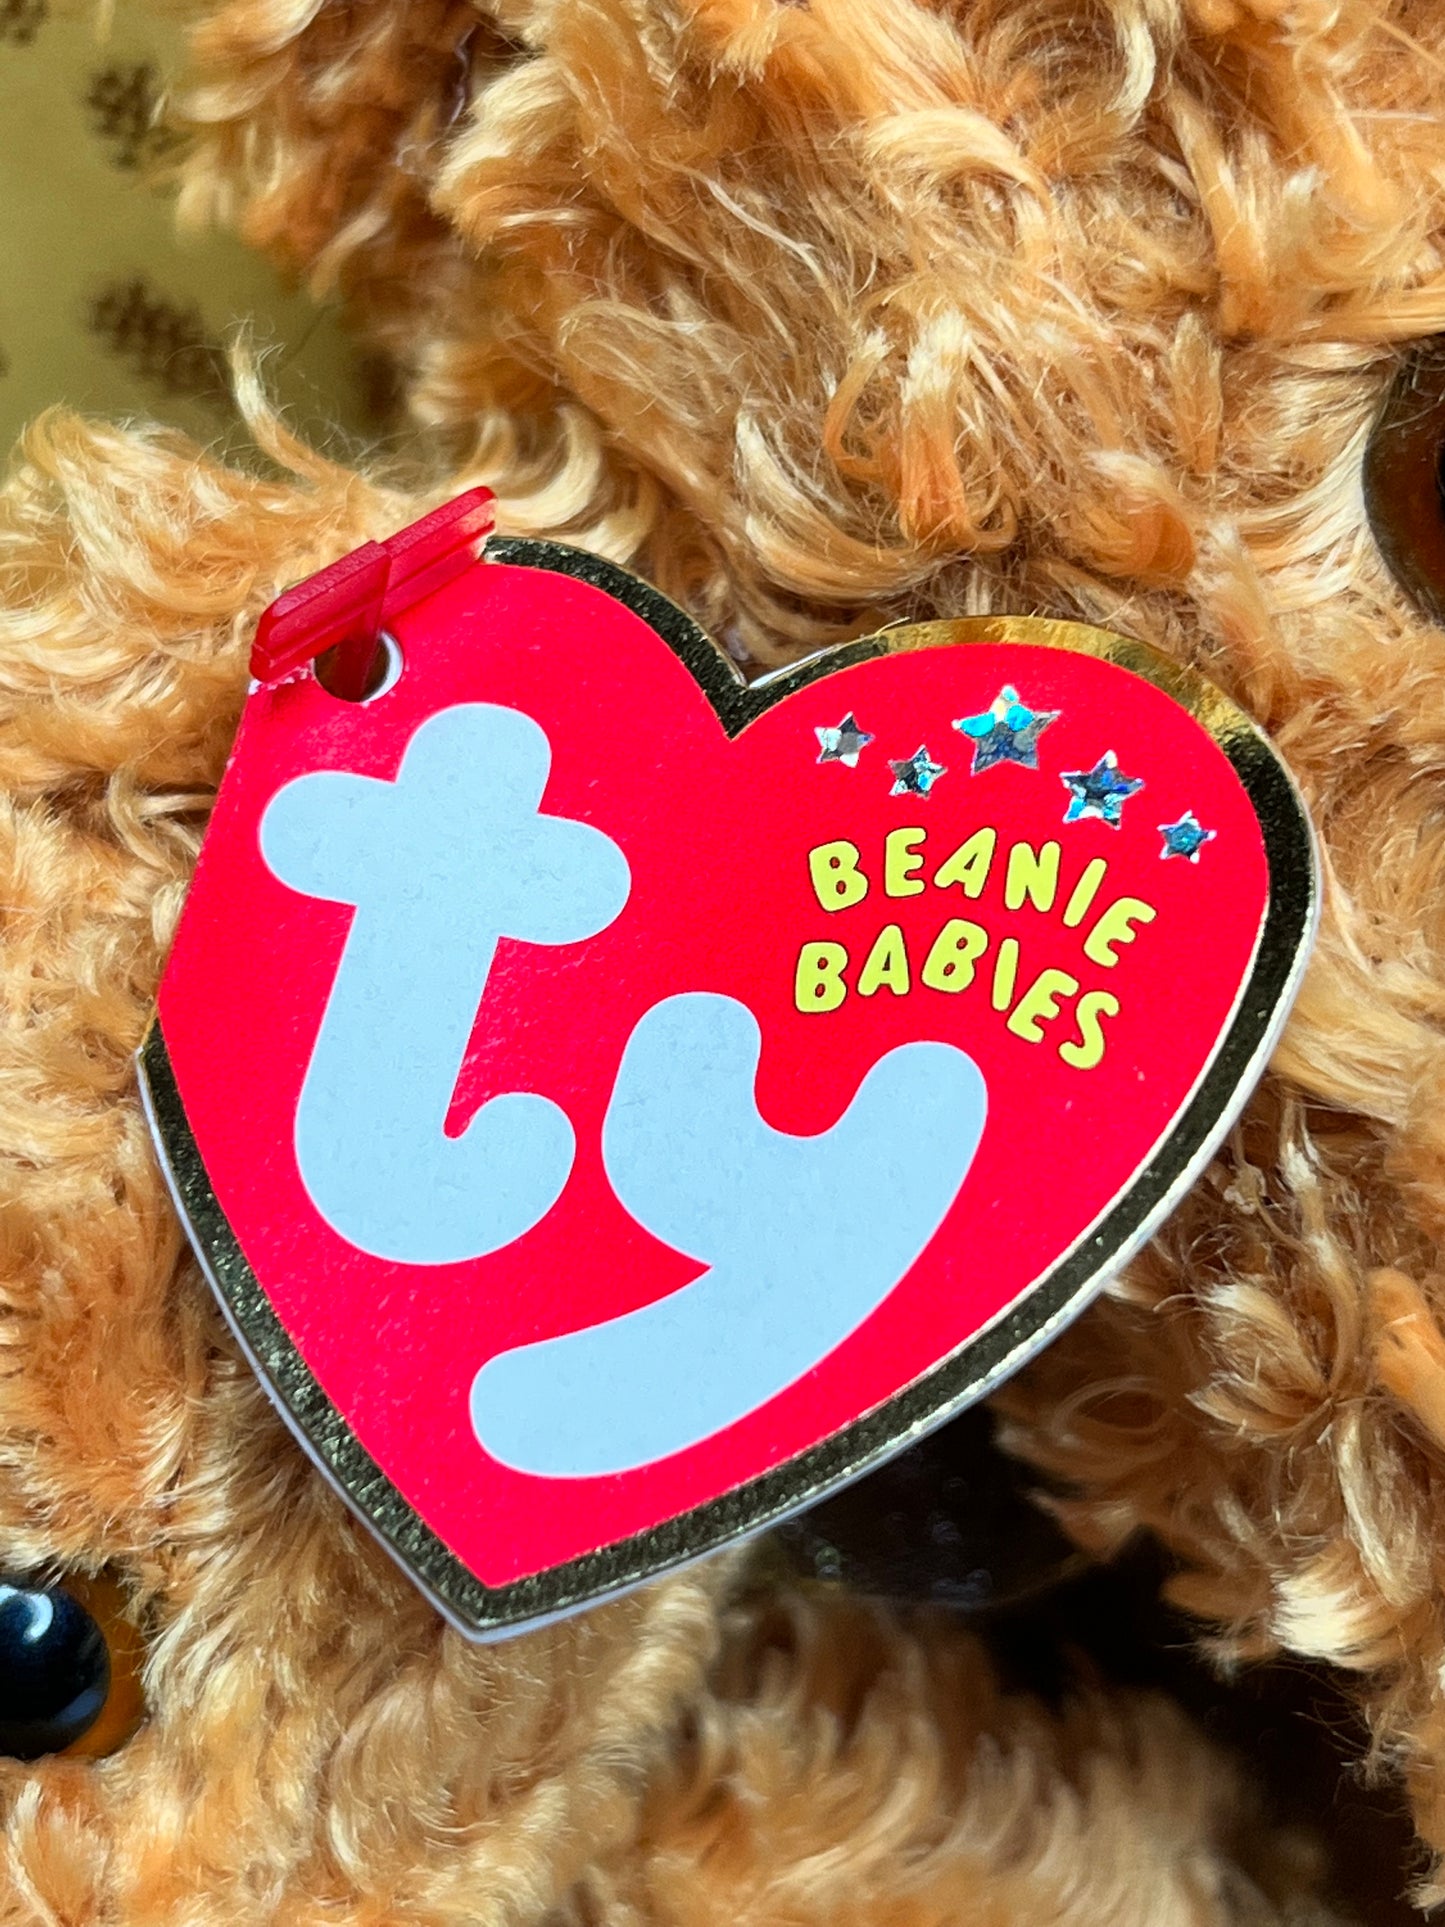 TY Beanie Babies “Teddy” The Set, January 20 2002